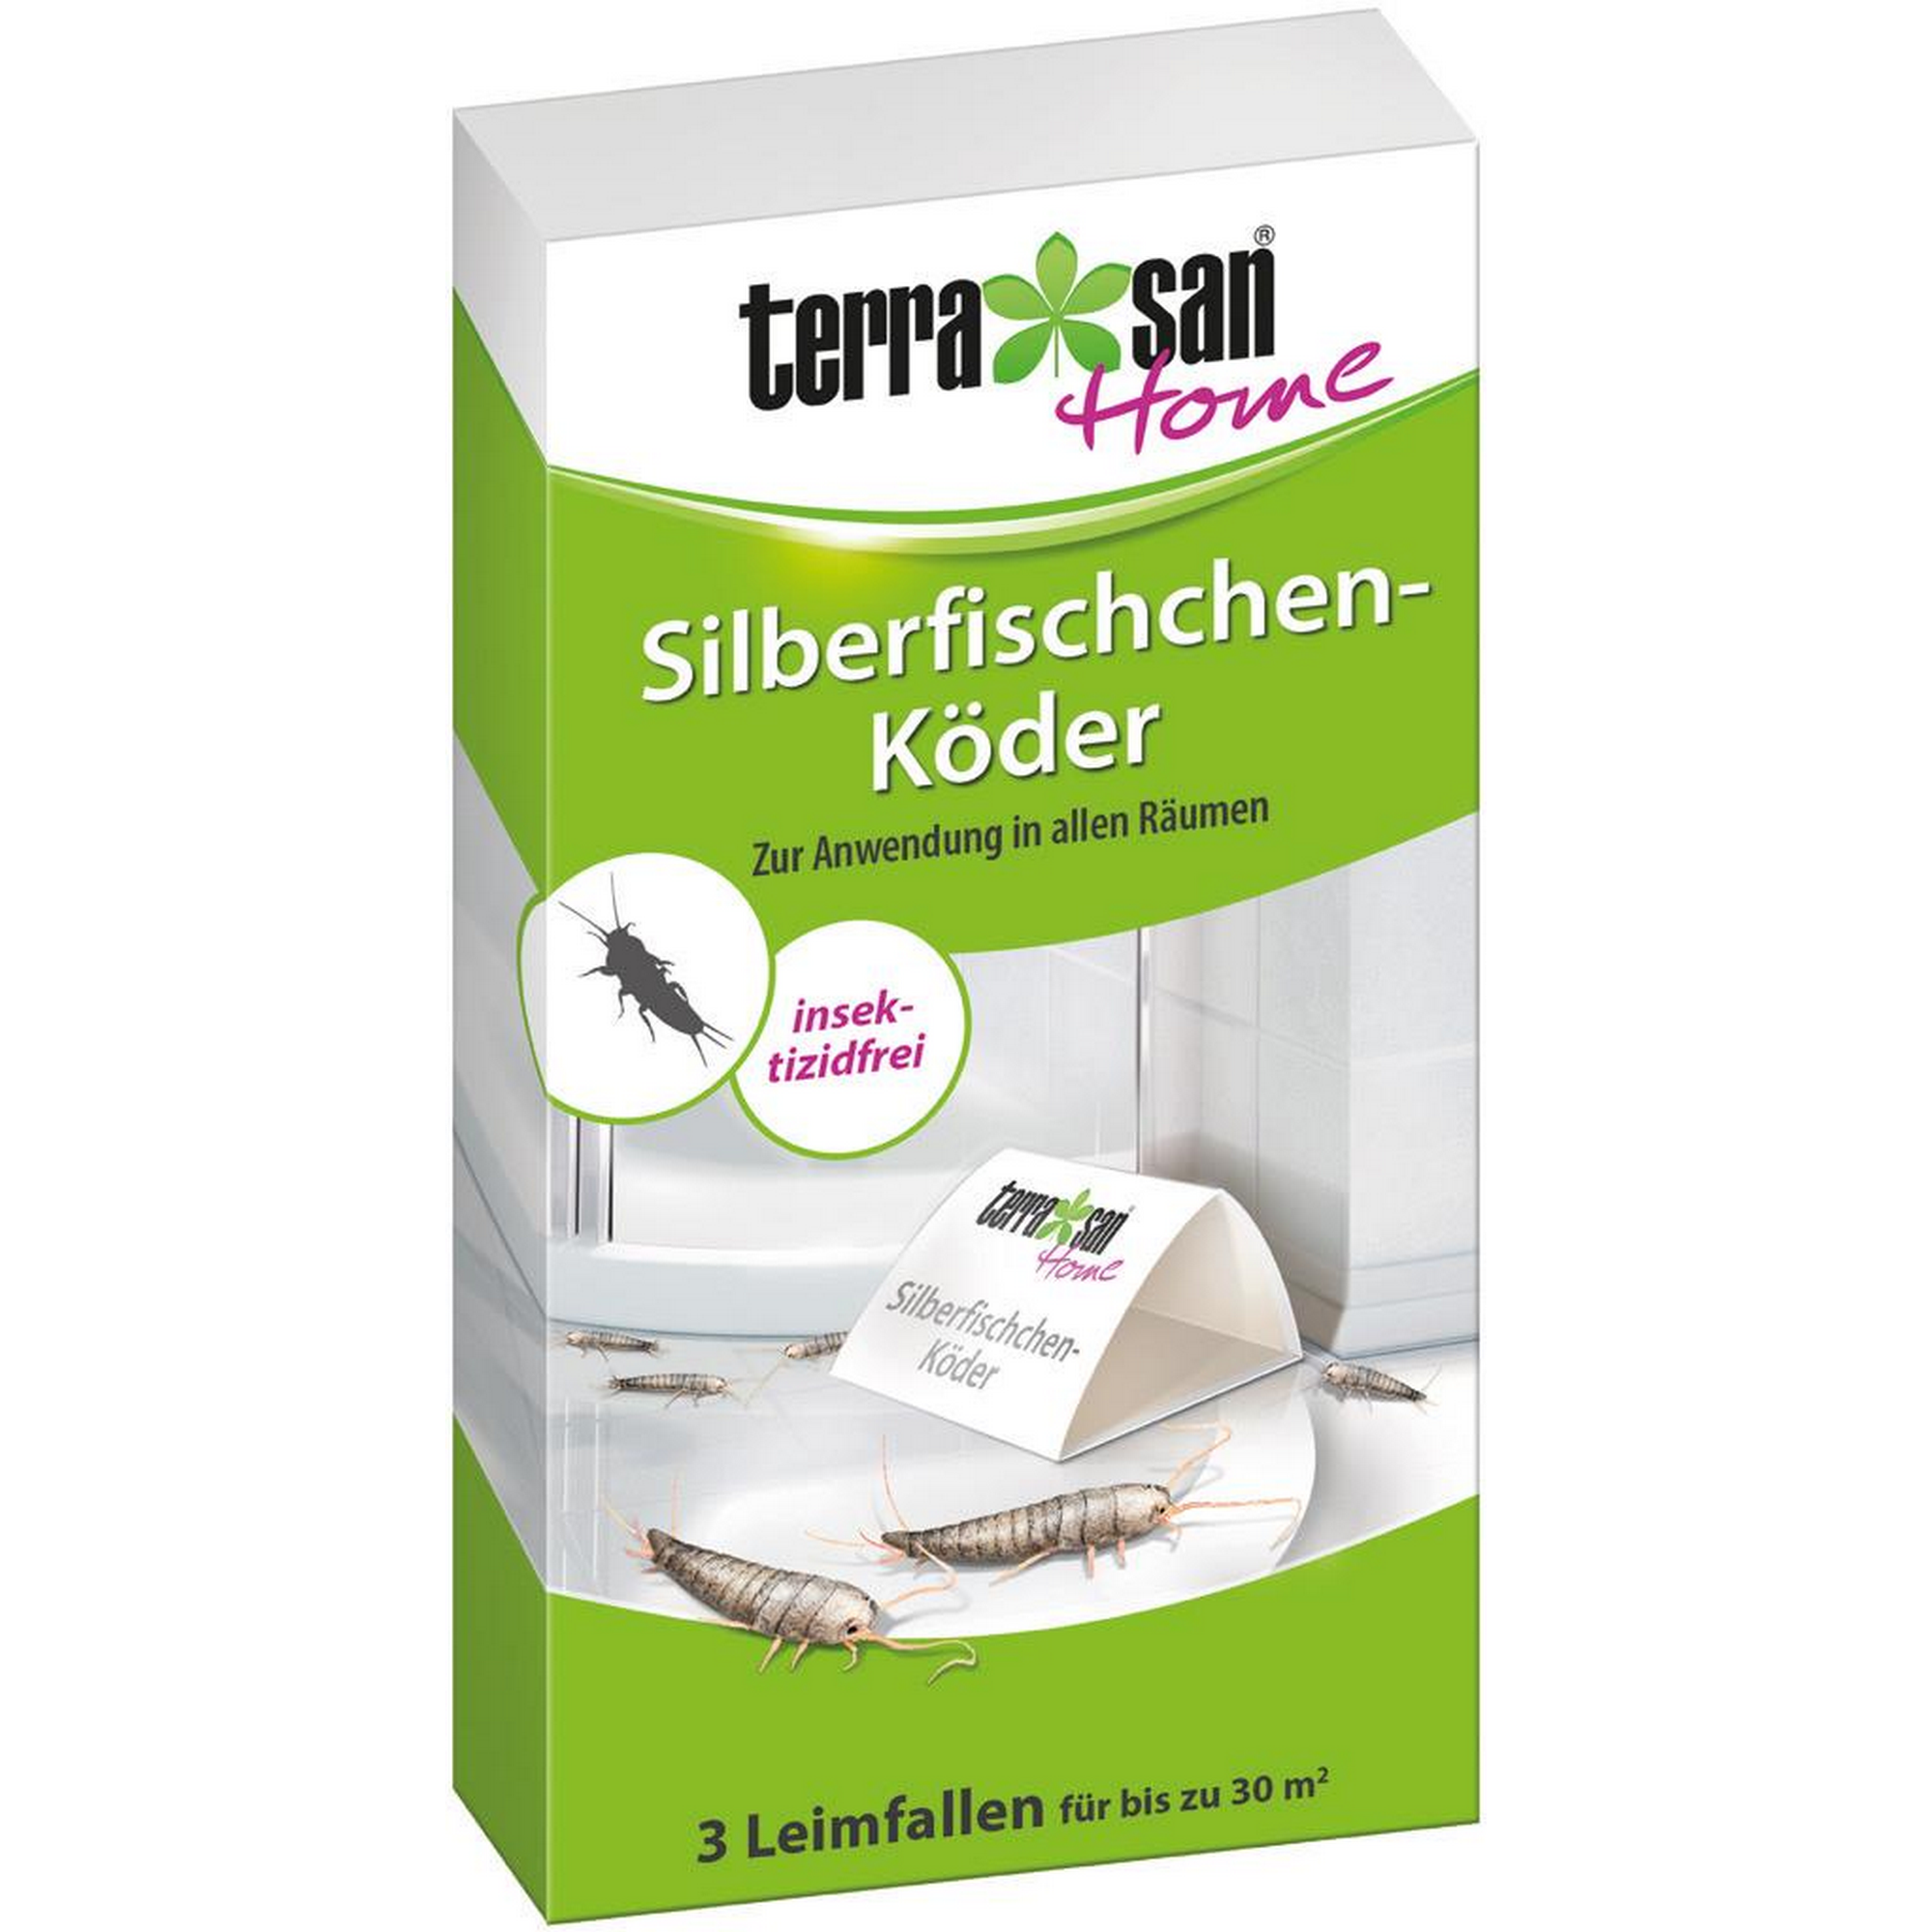 terrasan Home Silberfischchen-Köder 3 Stück + product picture